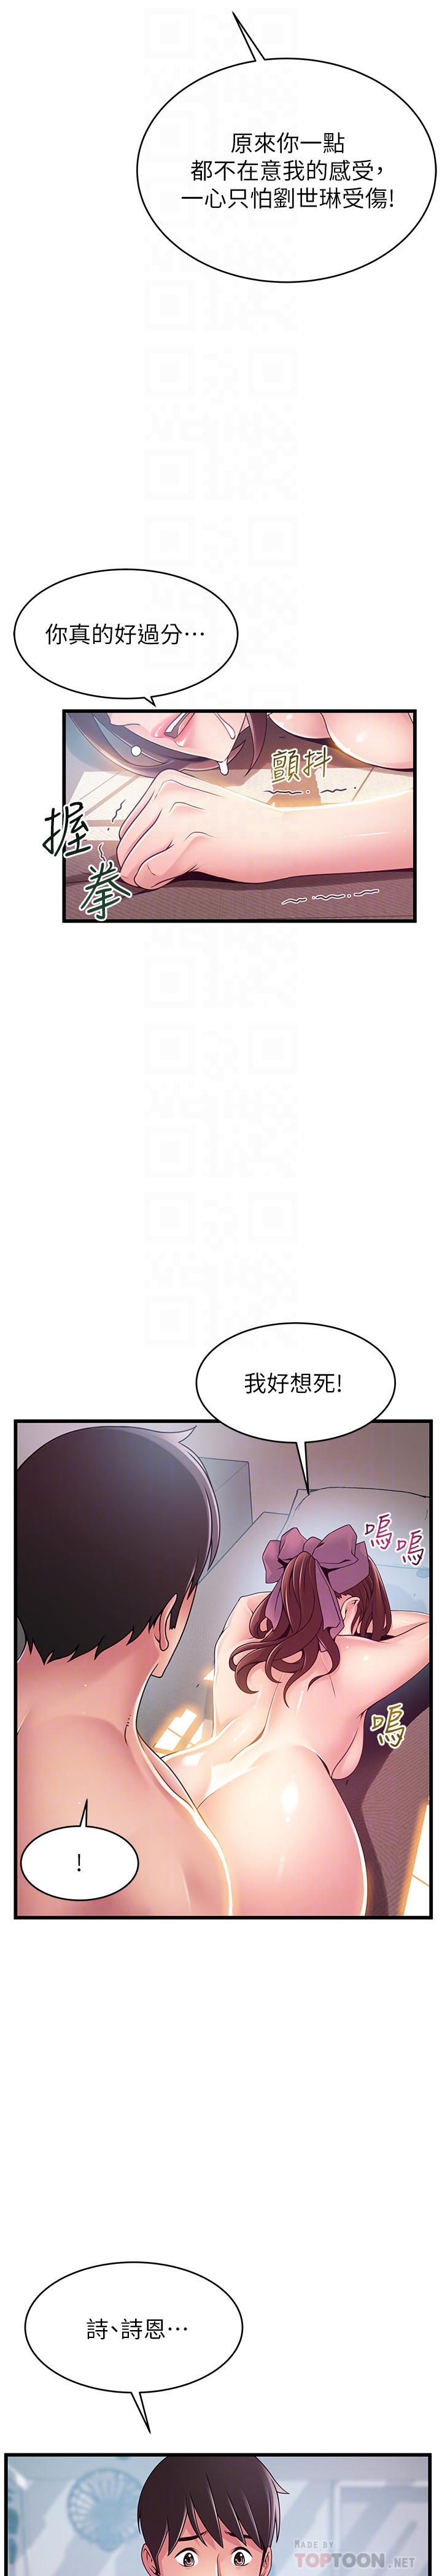 《弱点》漫画 第105话 - 徐薇茱要被判出局了?